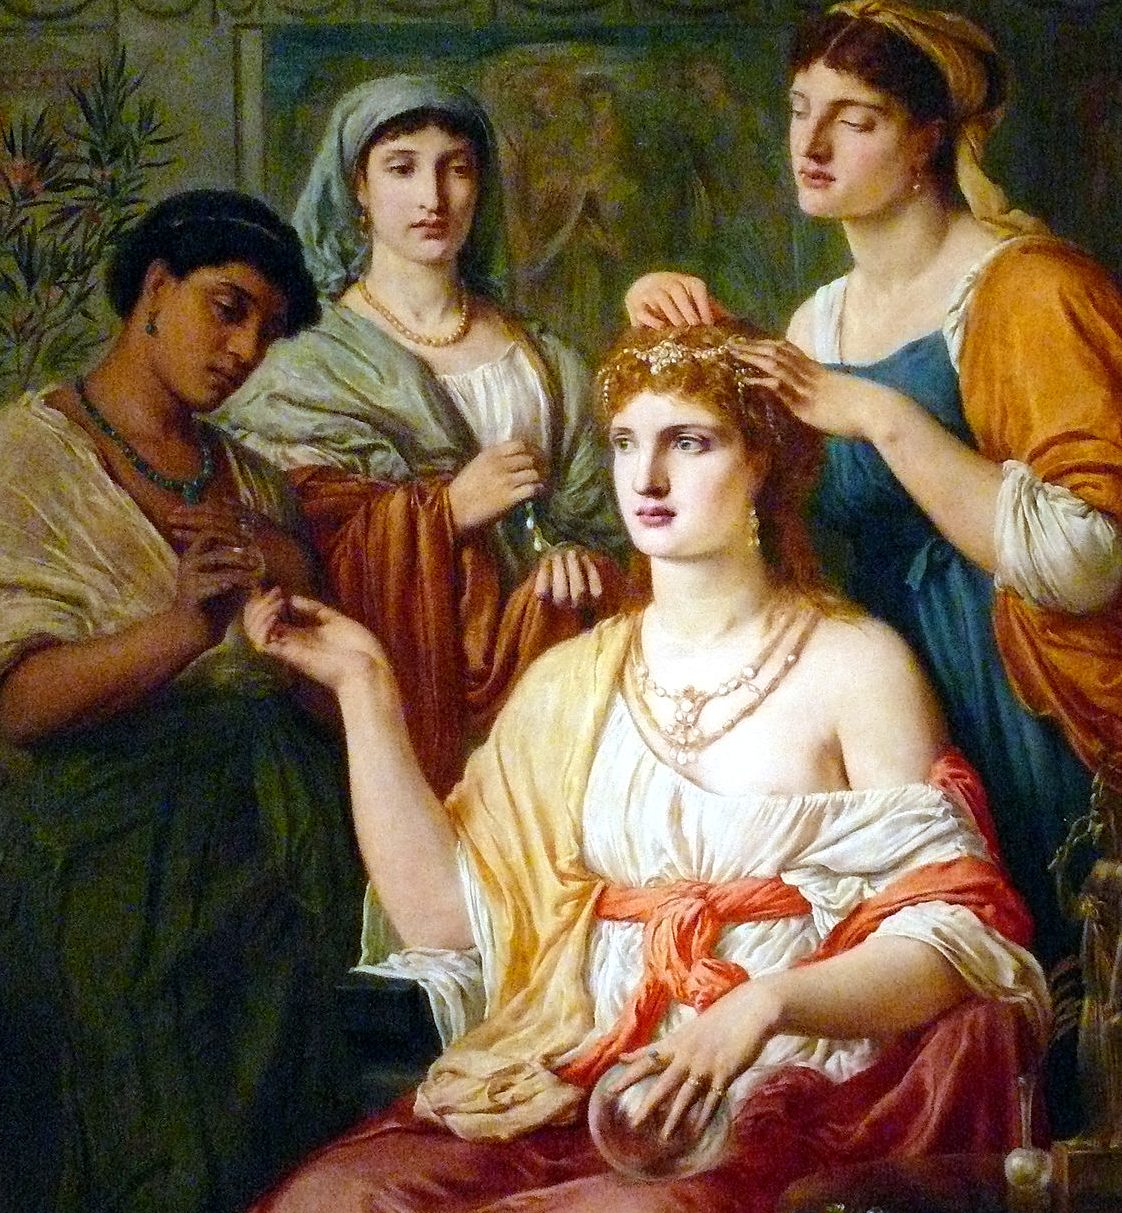 Le donne nell’Antica Roma